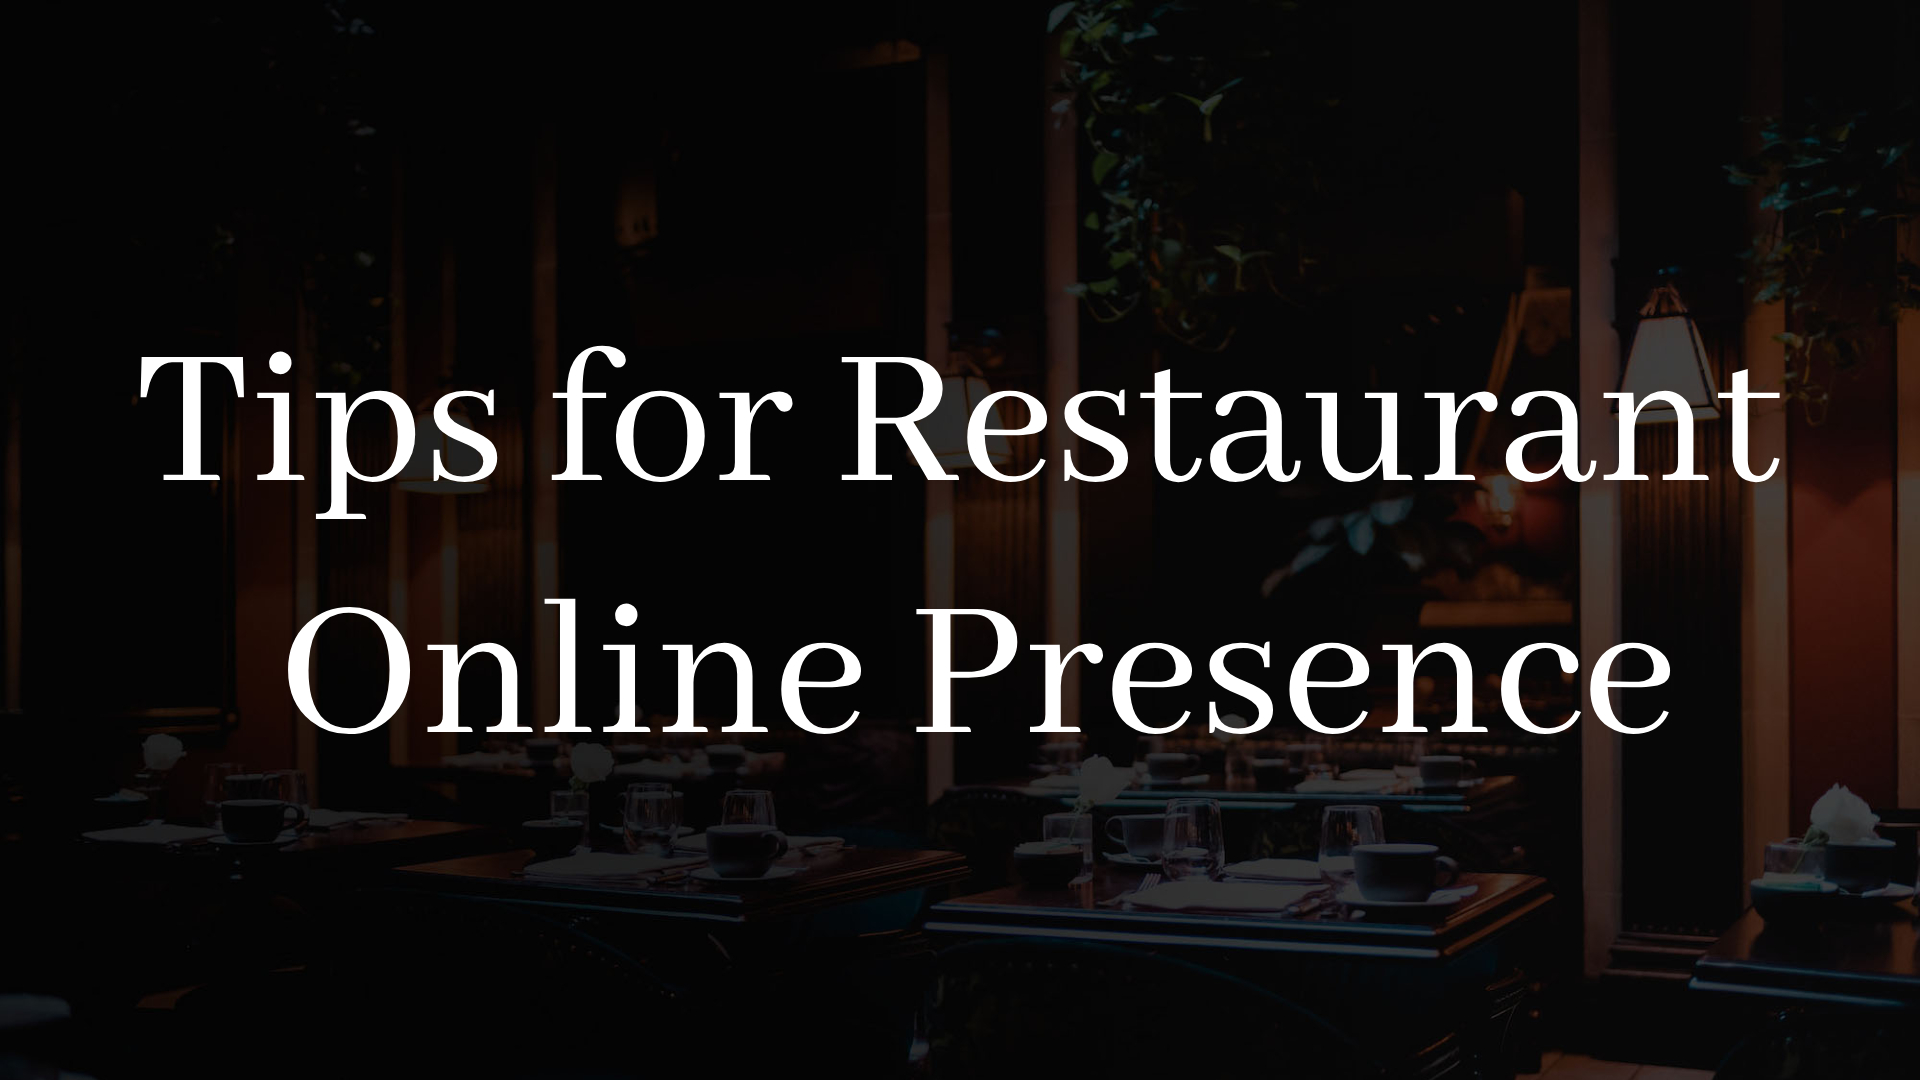 Tips for Restaurant Online Presence